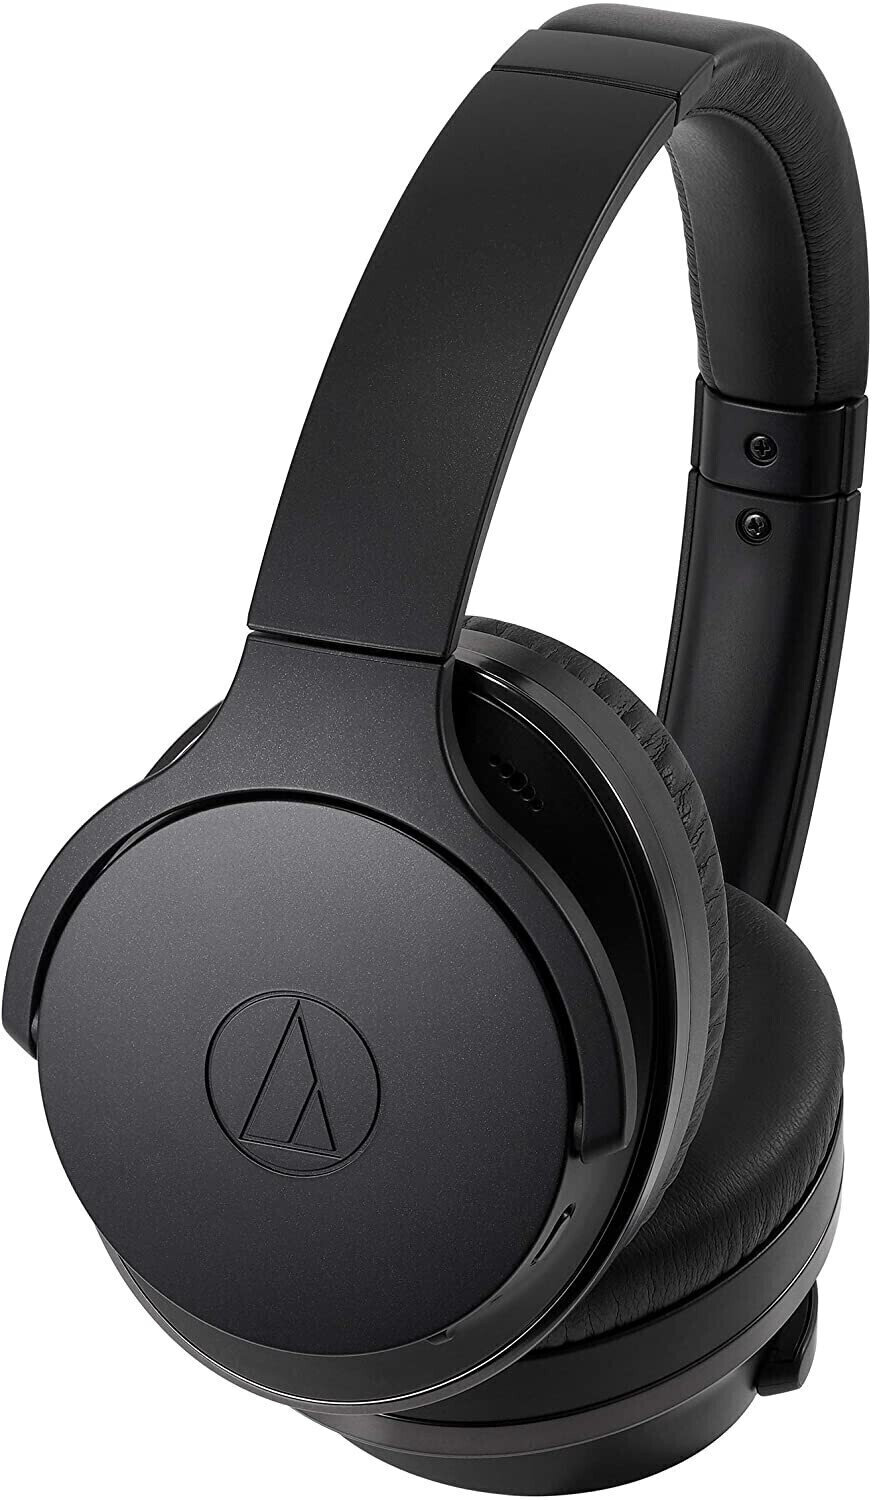 Bezdrátová sluchátka na uši Audio-Technica ATH-ANC900BT Black